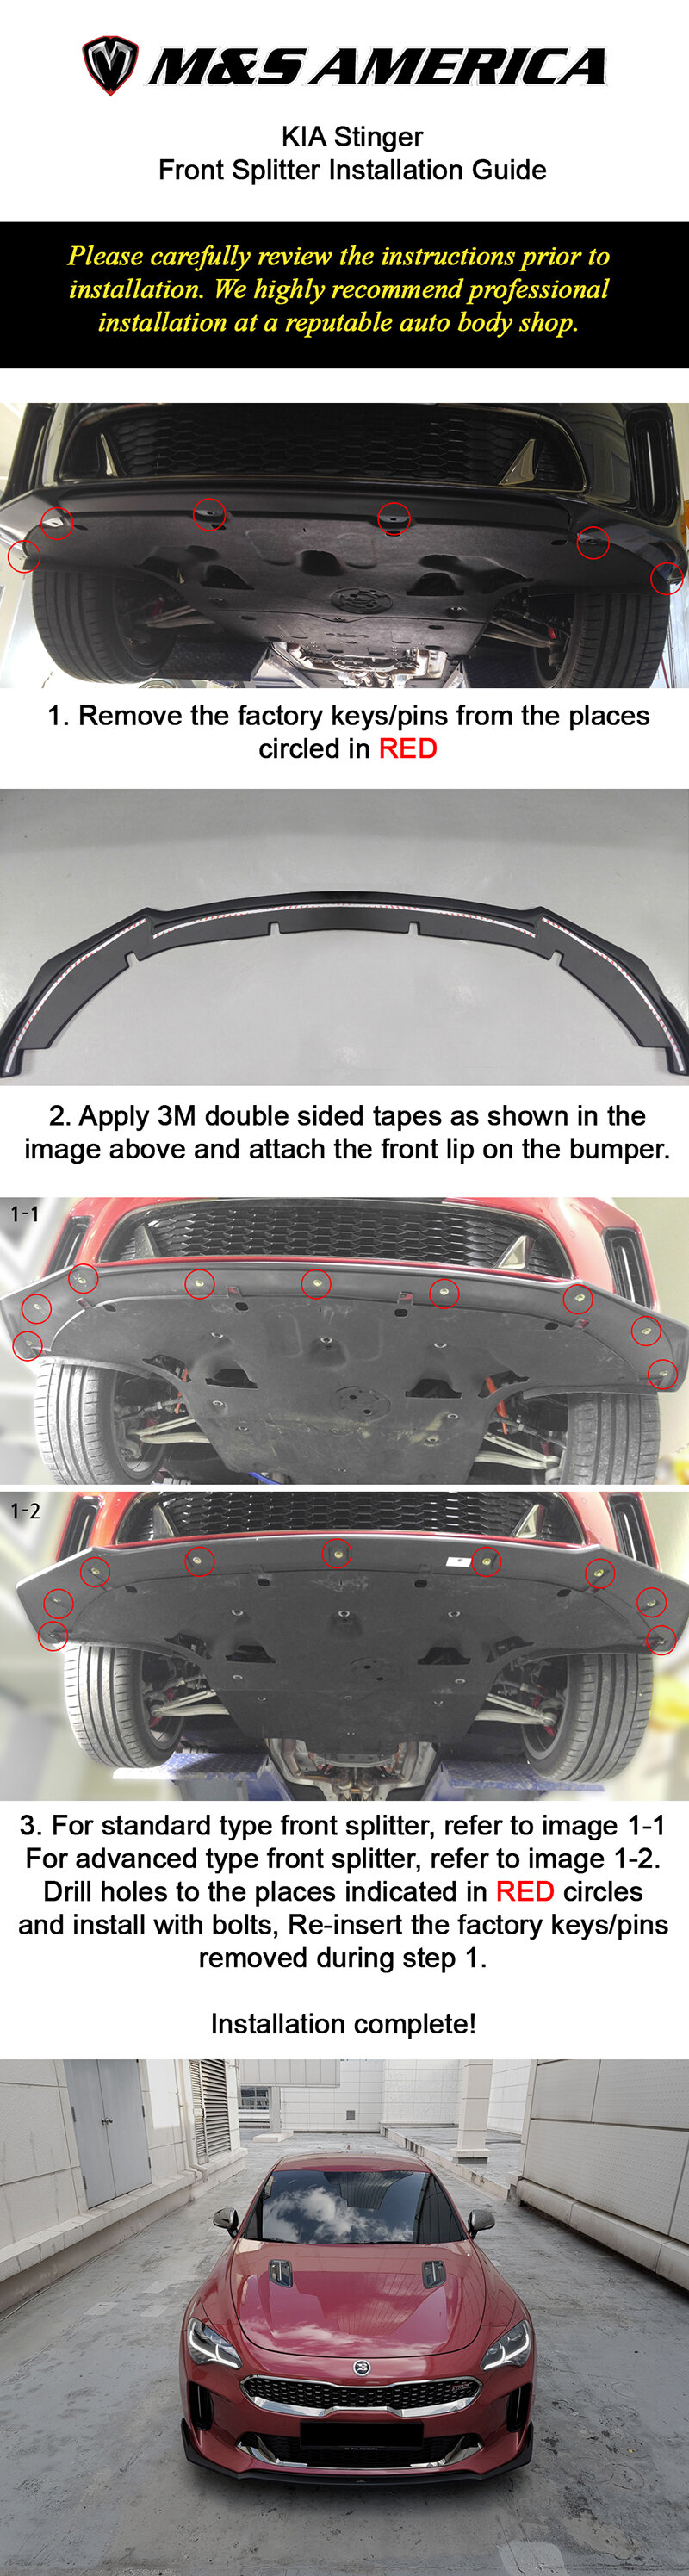 1. Stinger Front Splitter Installation Guide copy.jpg